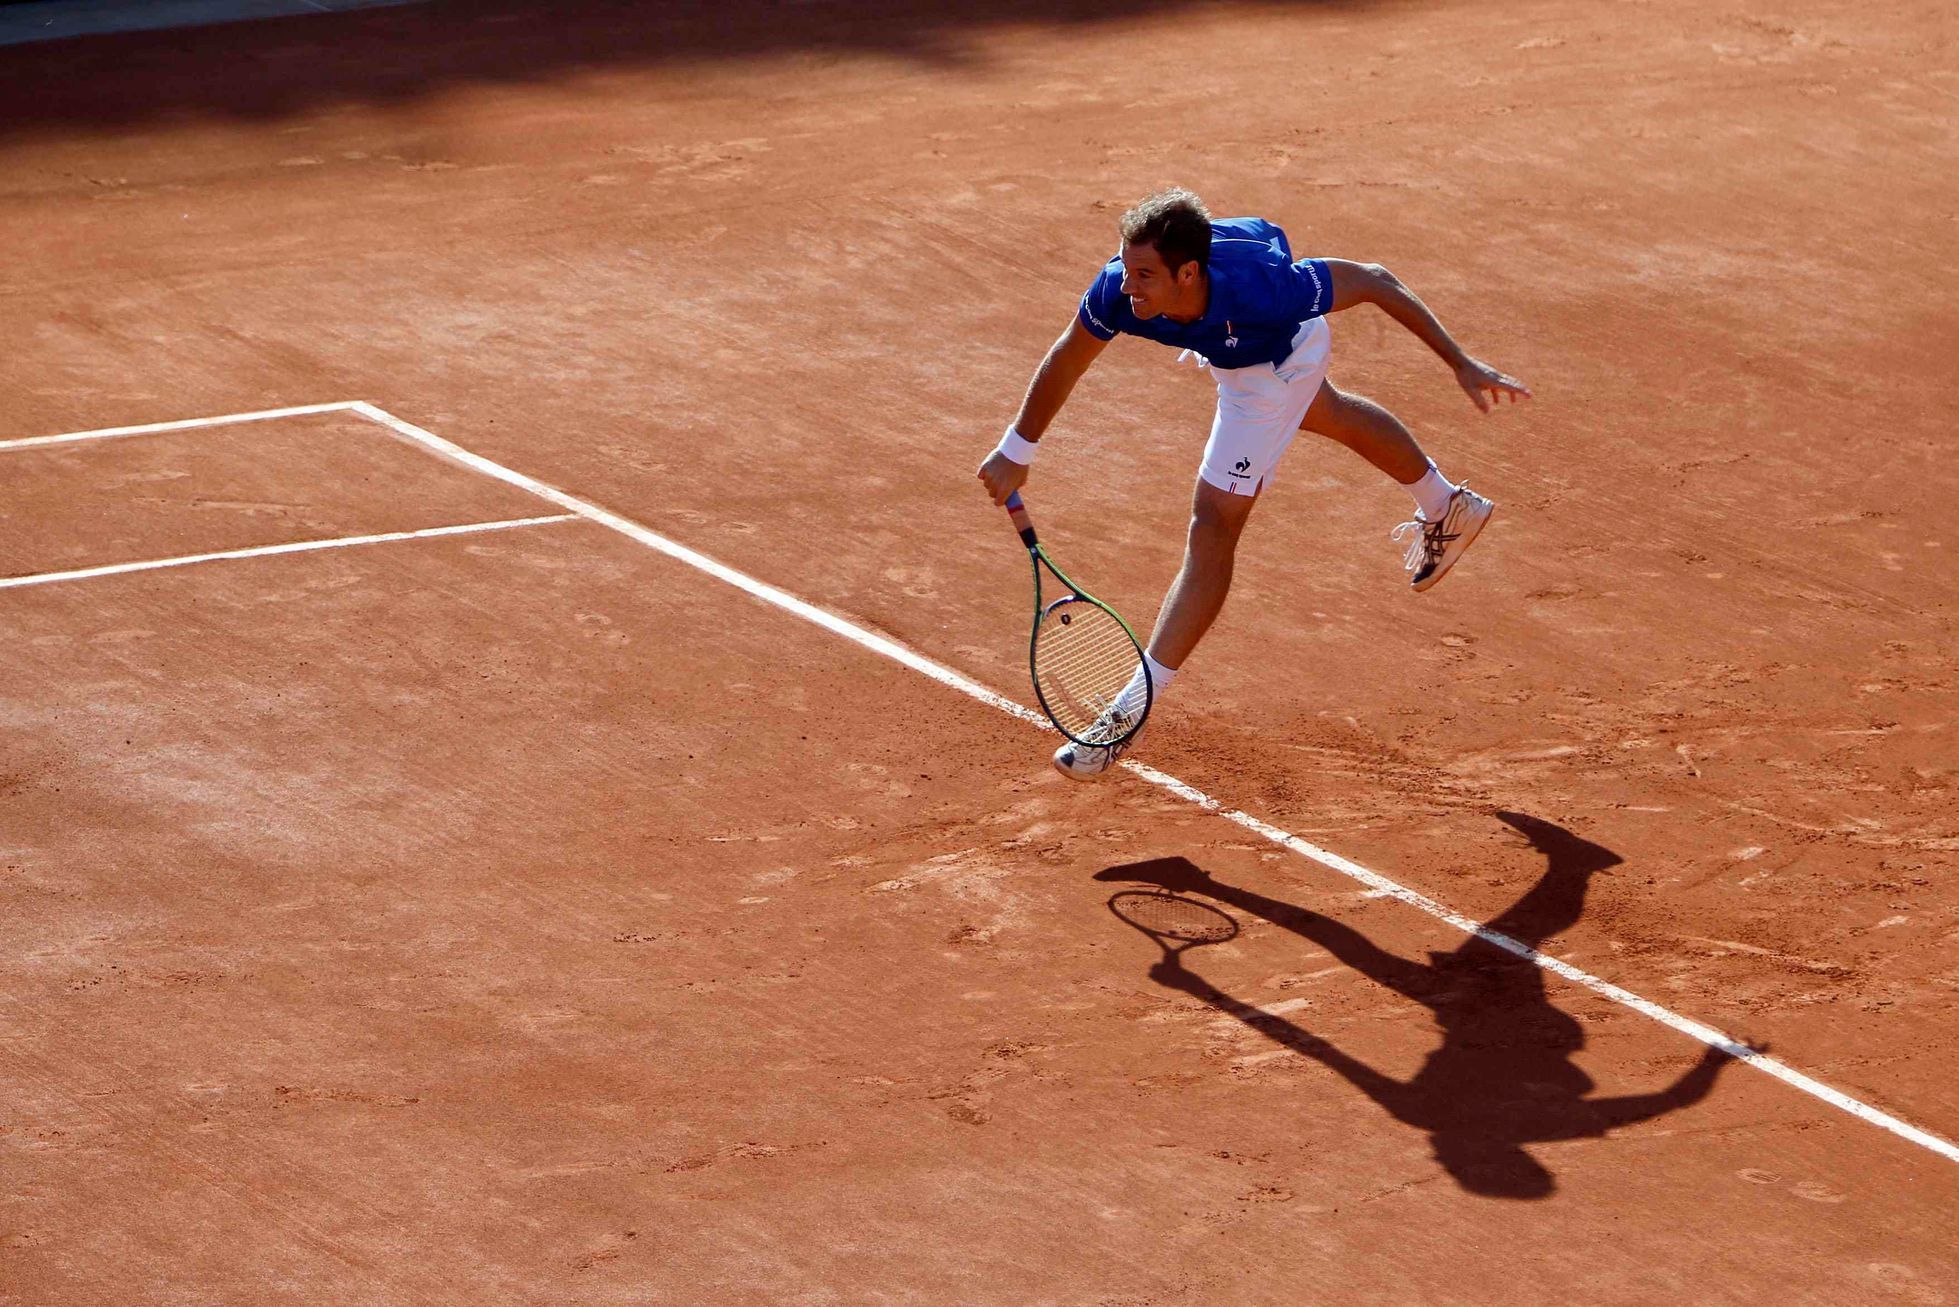 Richard Gasquet v utkání s Berdychem v semifinále Davis Cupu 2014